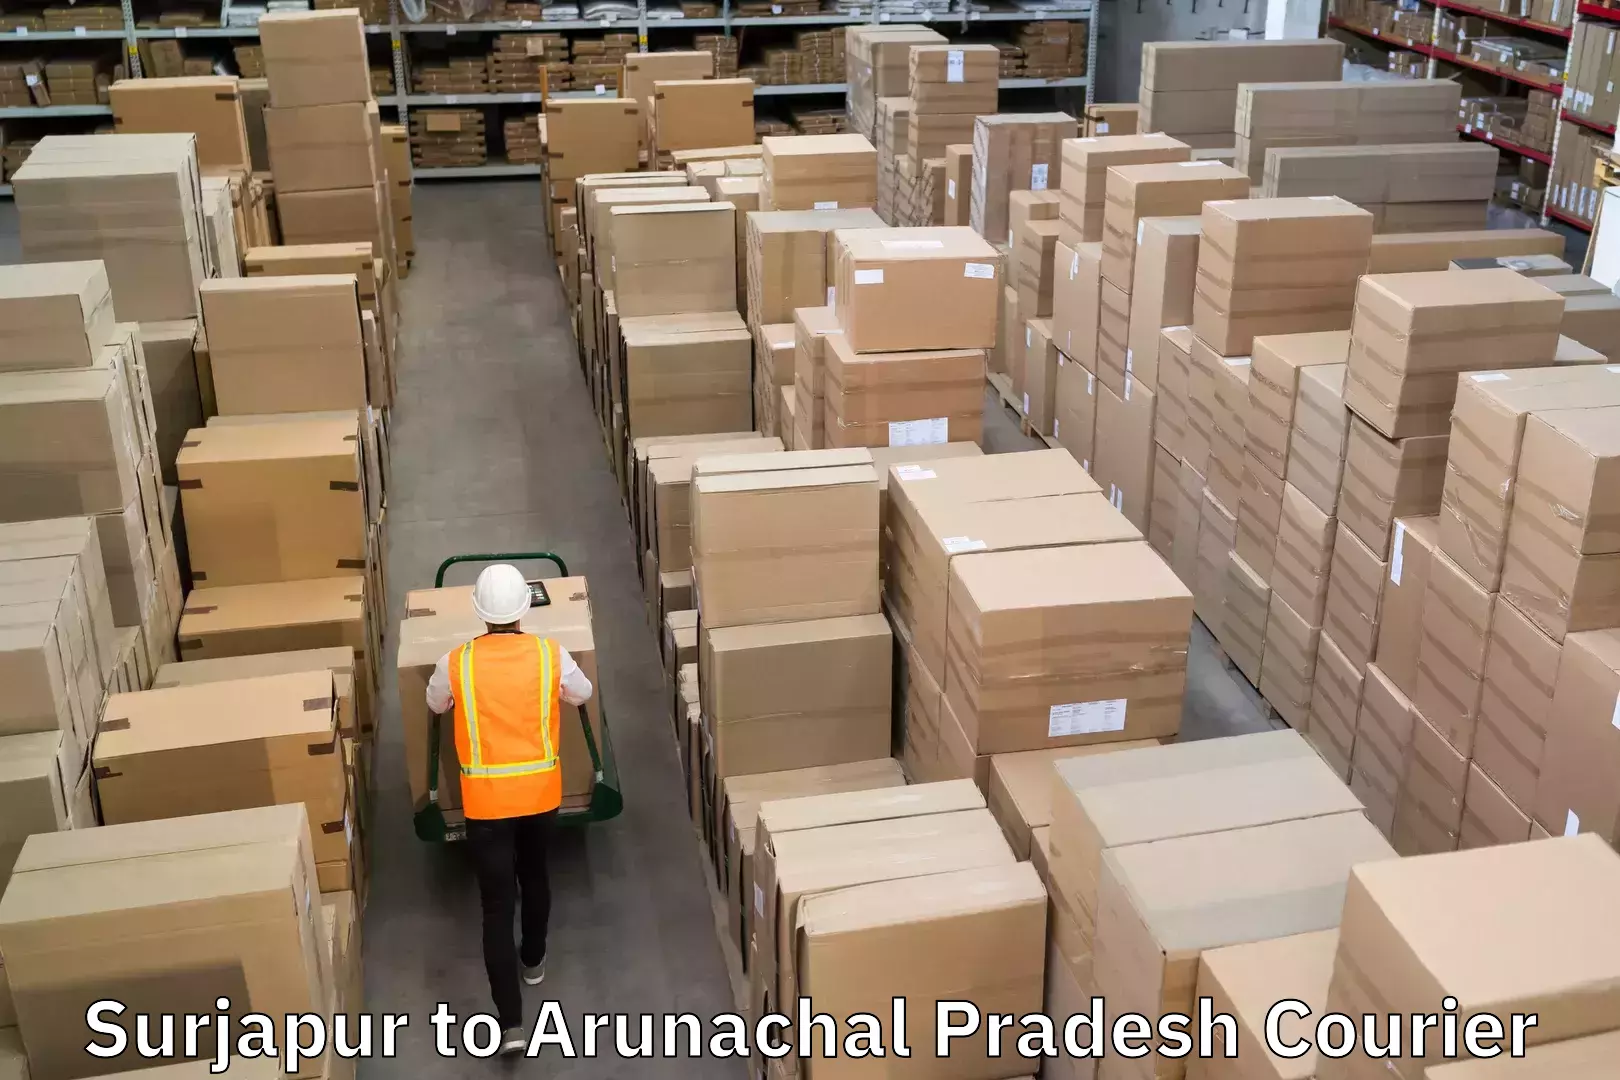 Cash on delivery service Surjapur to Arunachal Pradesh